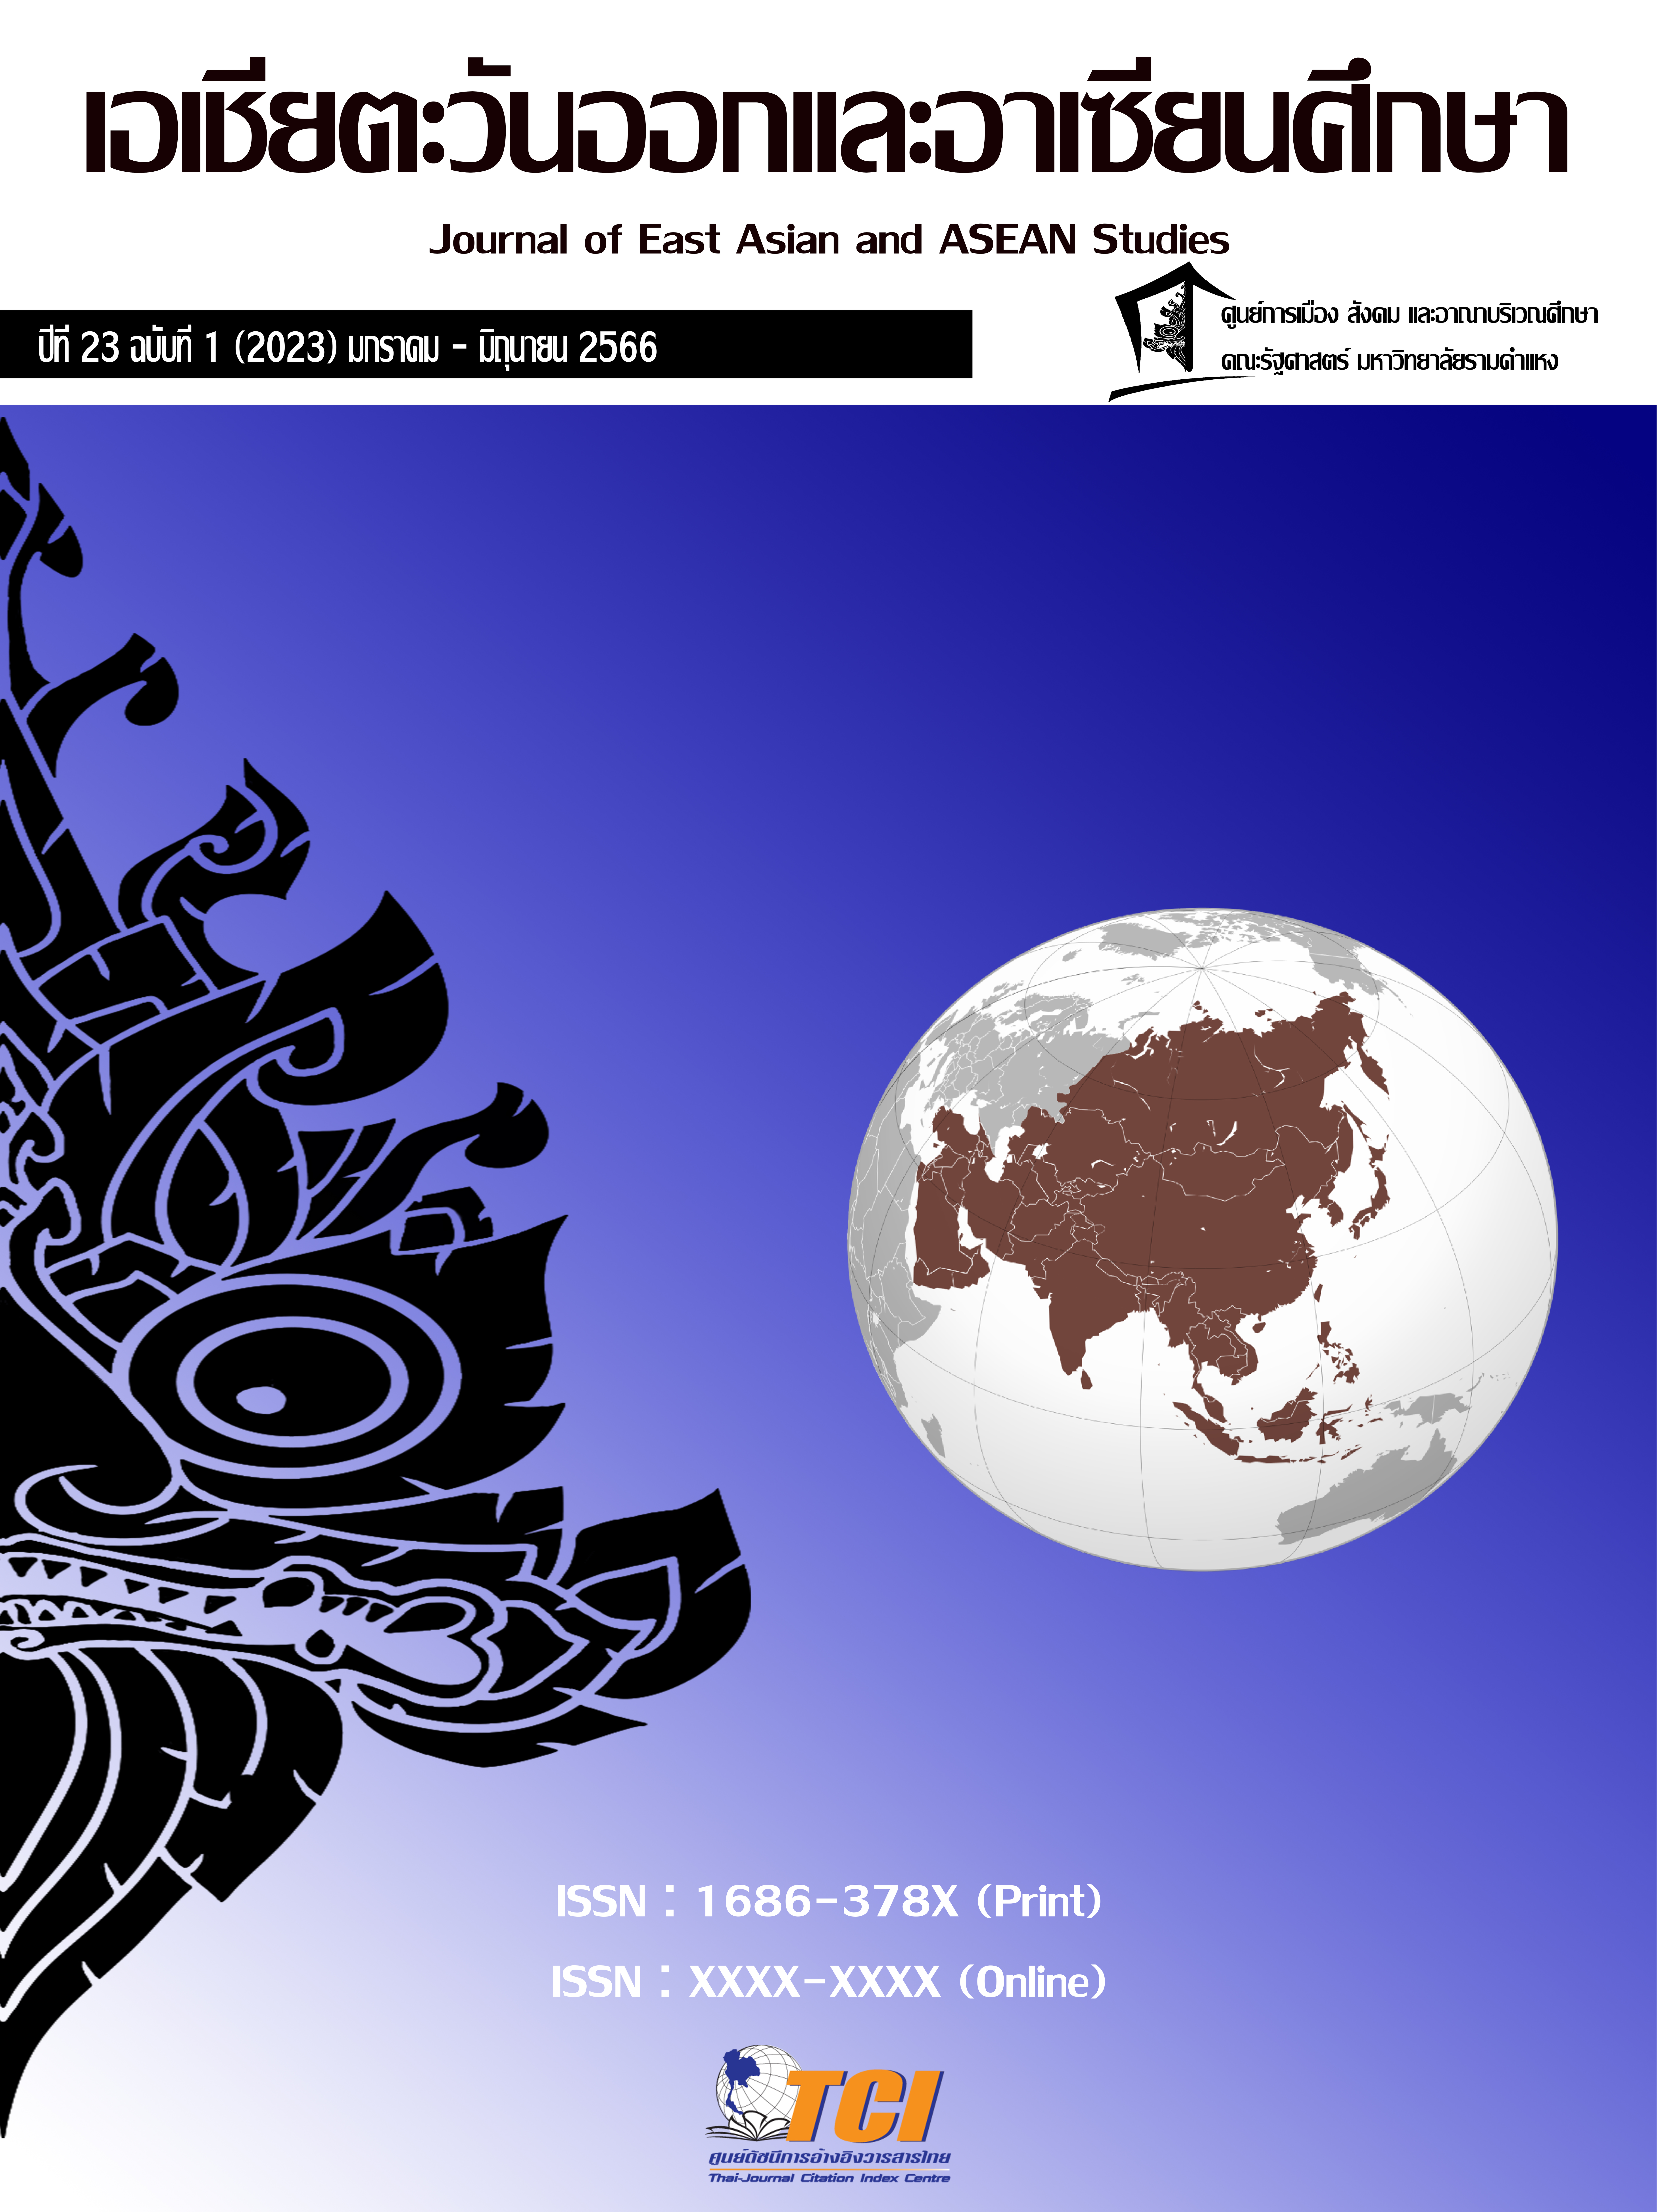 					ดู ปีที่ 23 ฉบับที่ 1 (2023): มกราคม-มิถุนายน : วารสารเอเชียตะวันออกและอาเซียนศึกษา
				